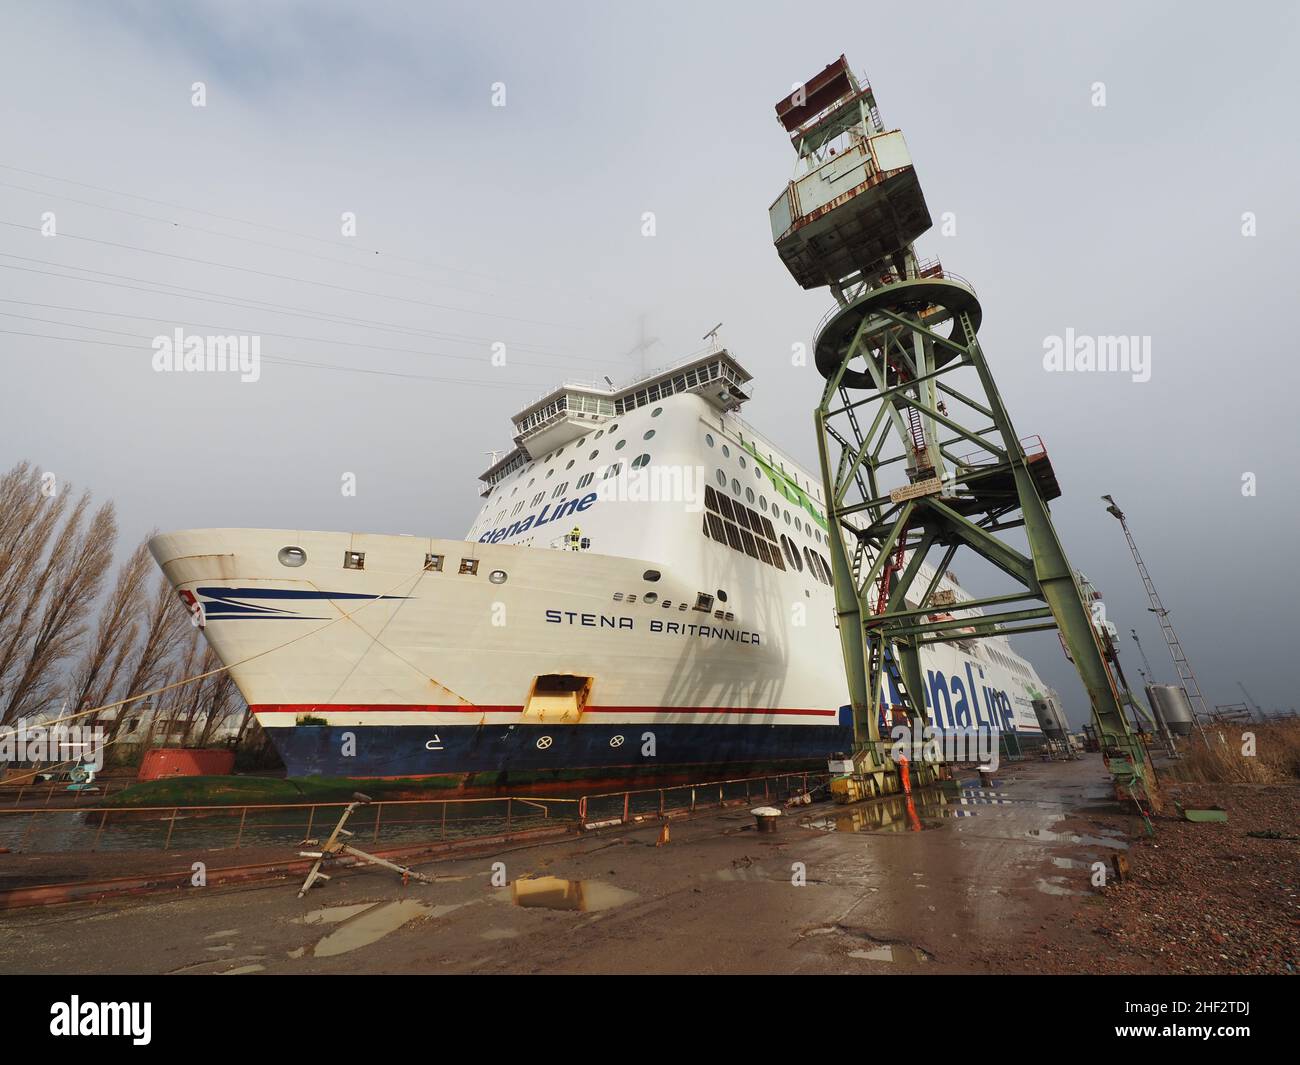 El ferry de la línea de Stena Stena Brittanica está siendo arrastrado a un muelle seco en el puerto de Amberes, Bélgica Foto de stock